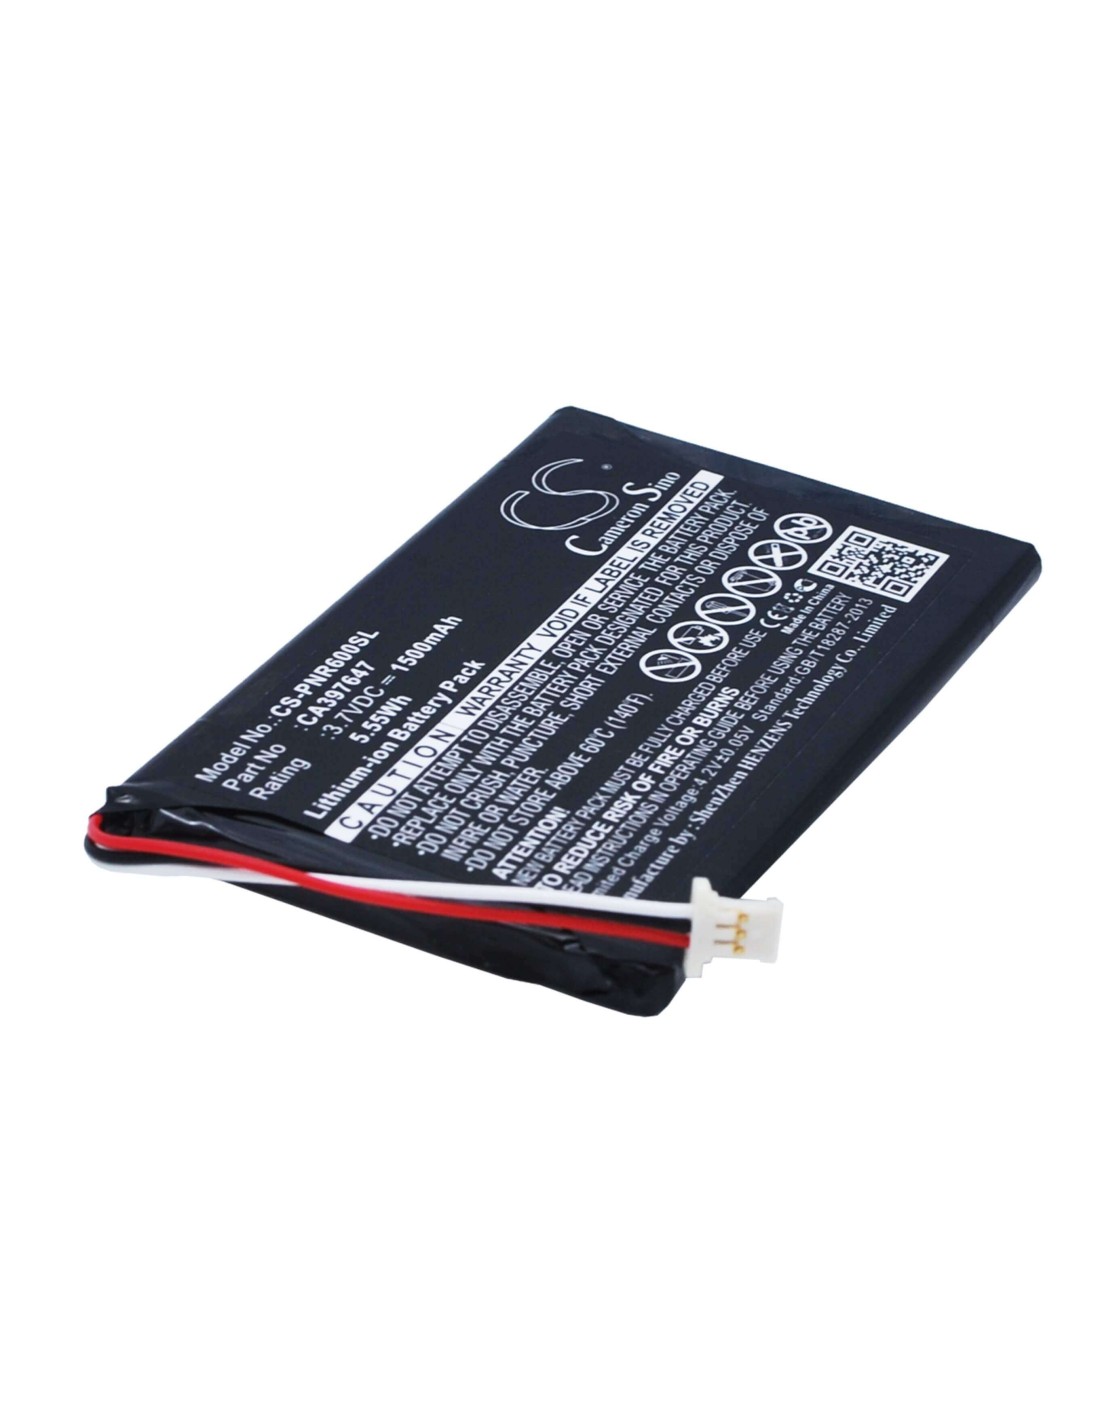 Battery for Pandigital Novel 6, Prd06e20wwh8 3.7V, 1500mAh - 5.55Wh